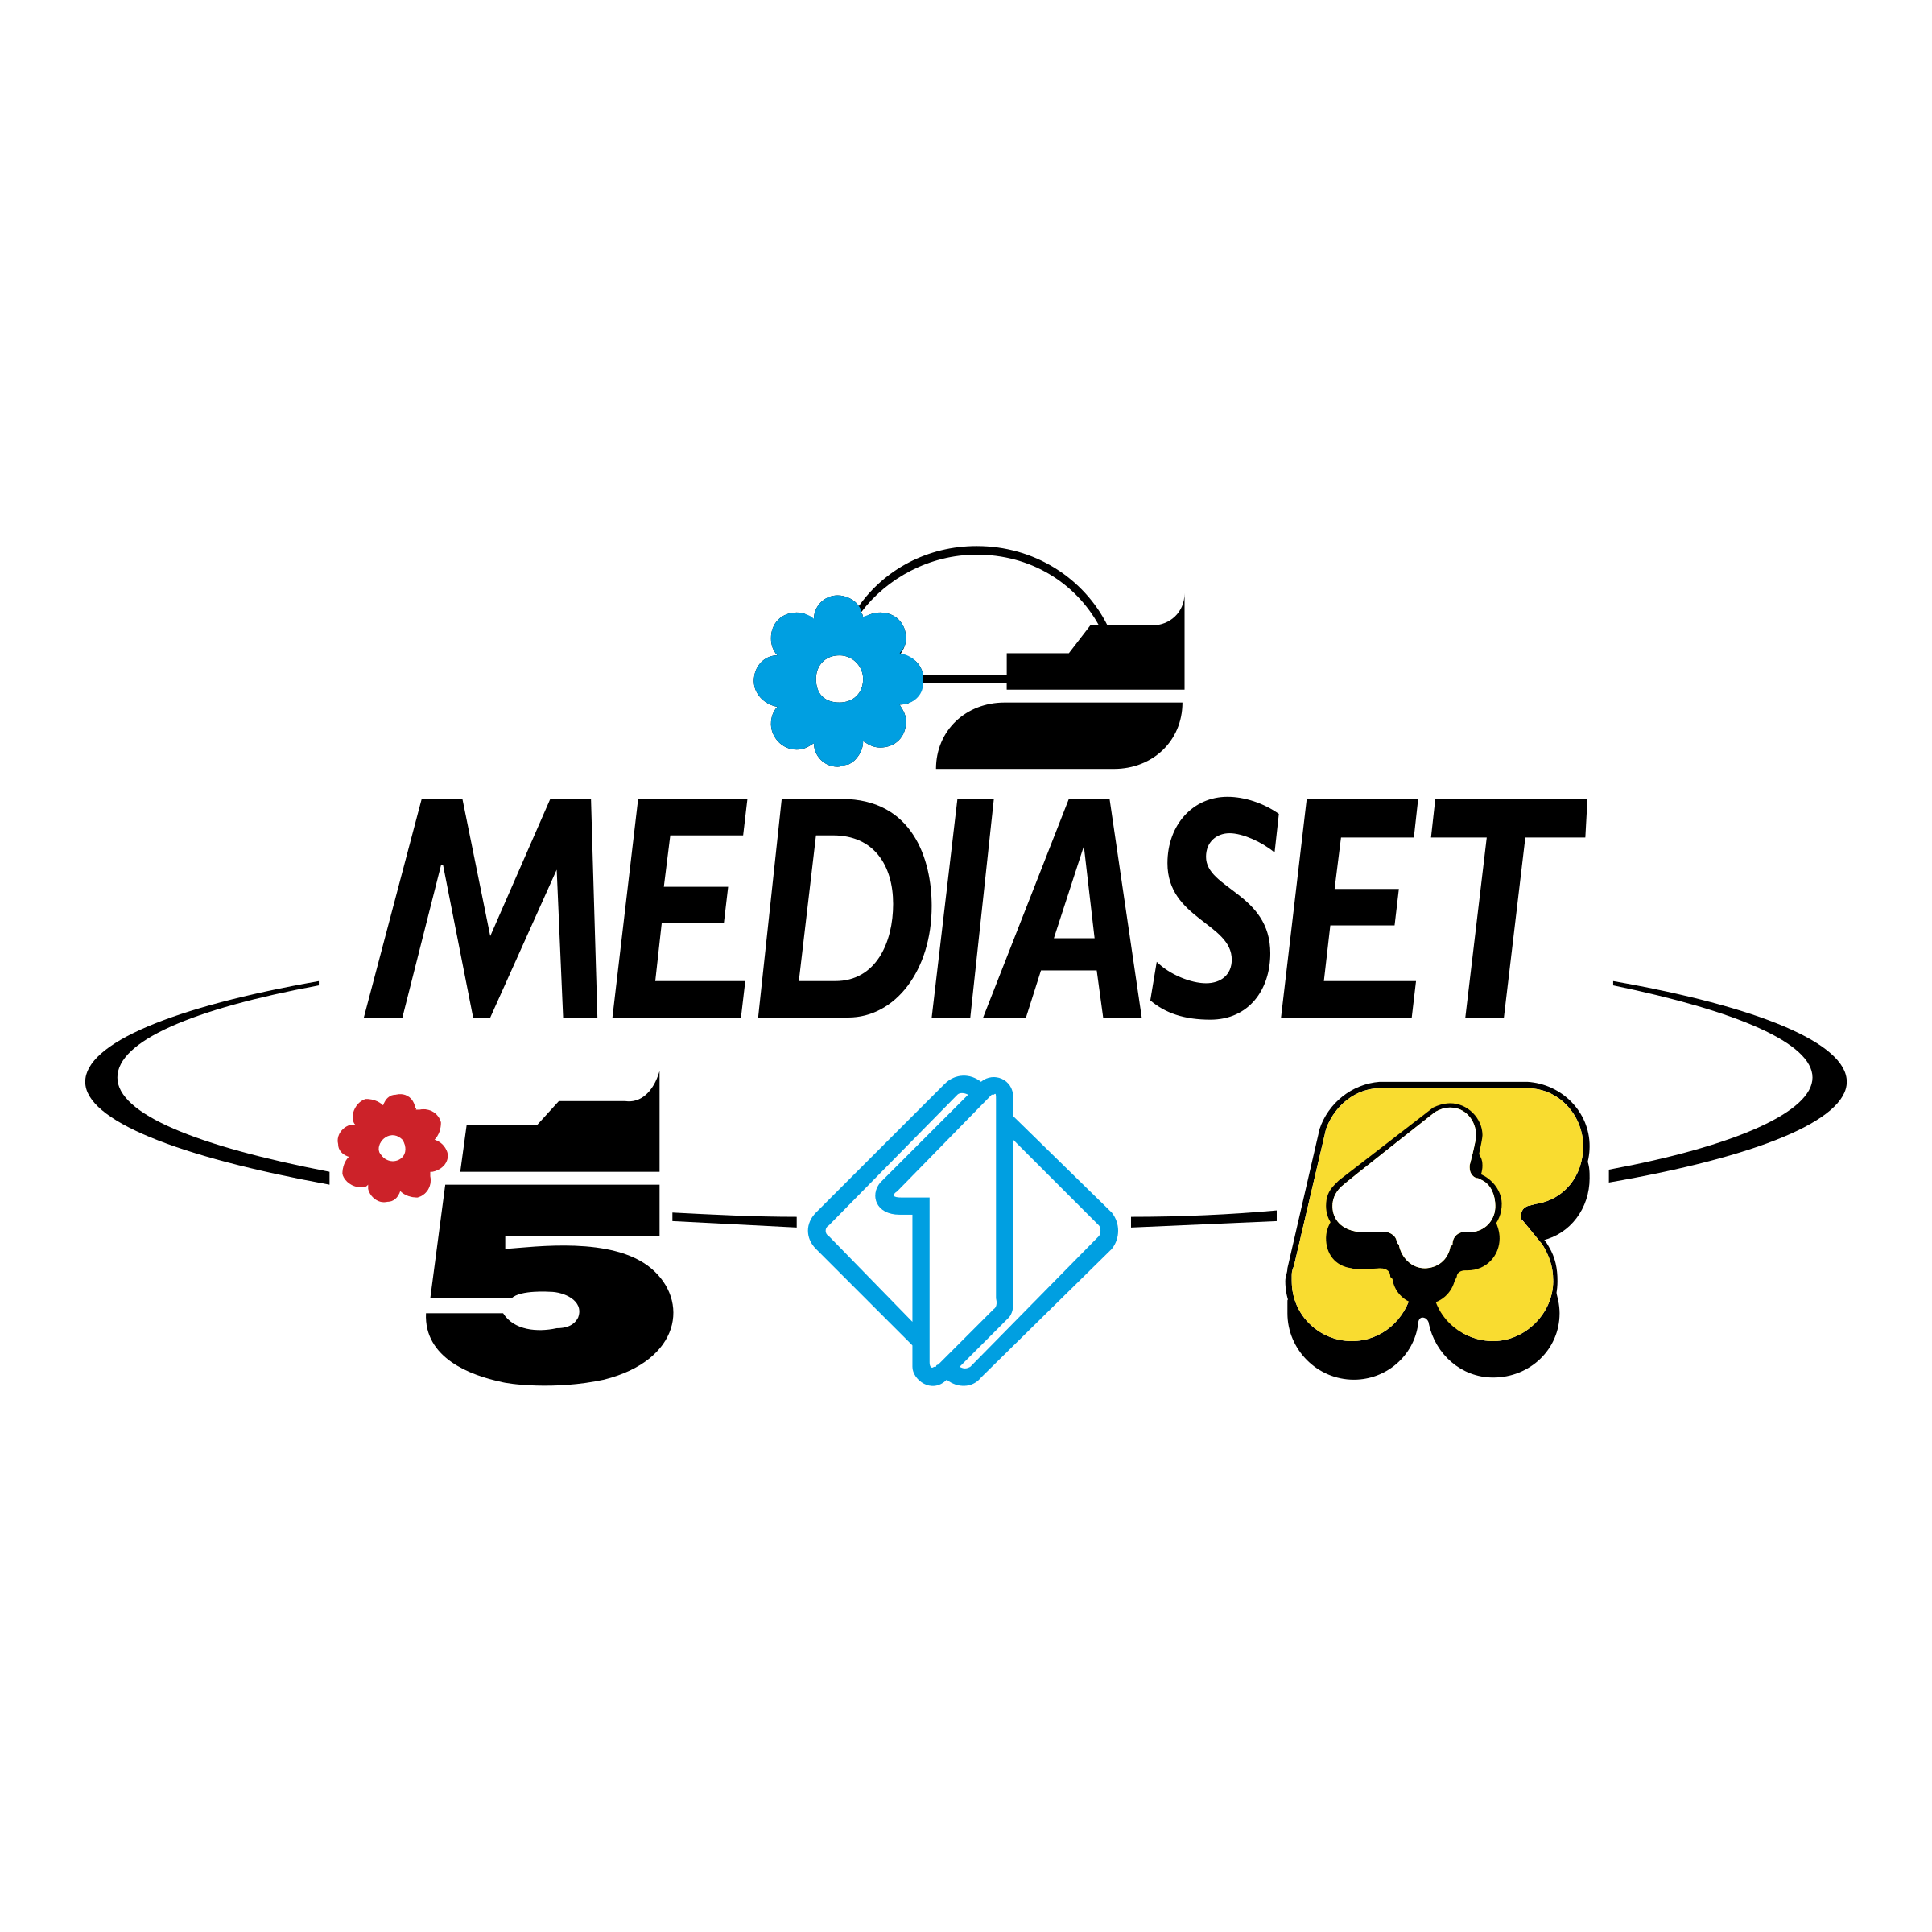 Mediaset Logo - Mediaset Logo PNG Transparent & SVG Vector - Freebie Supply